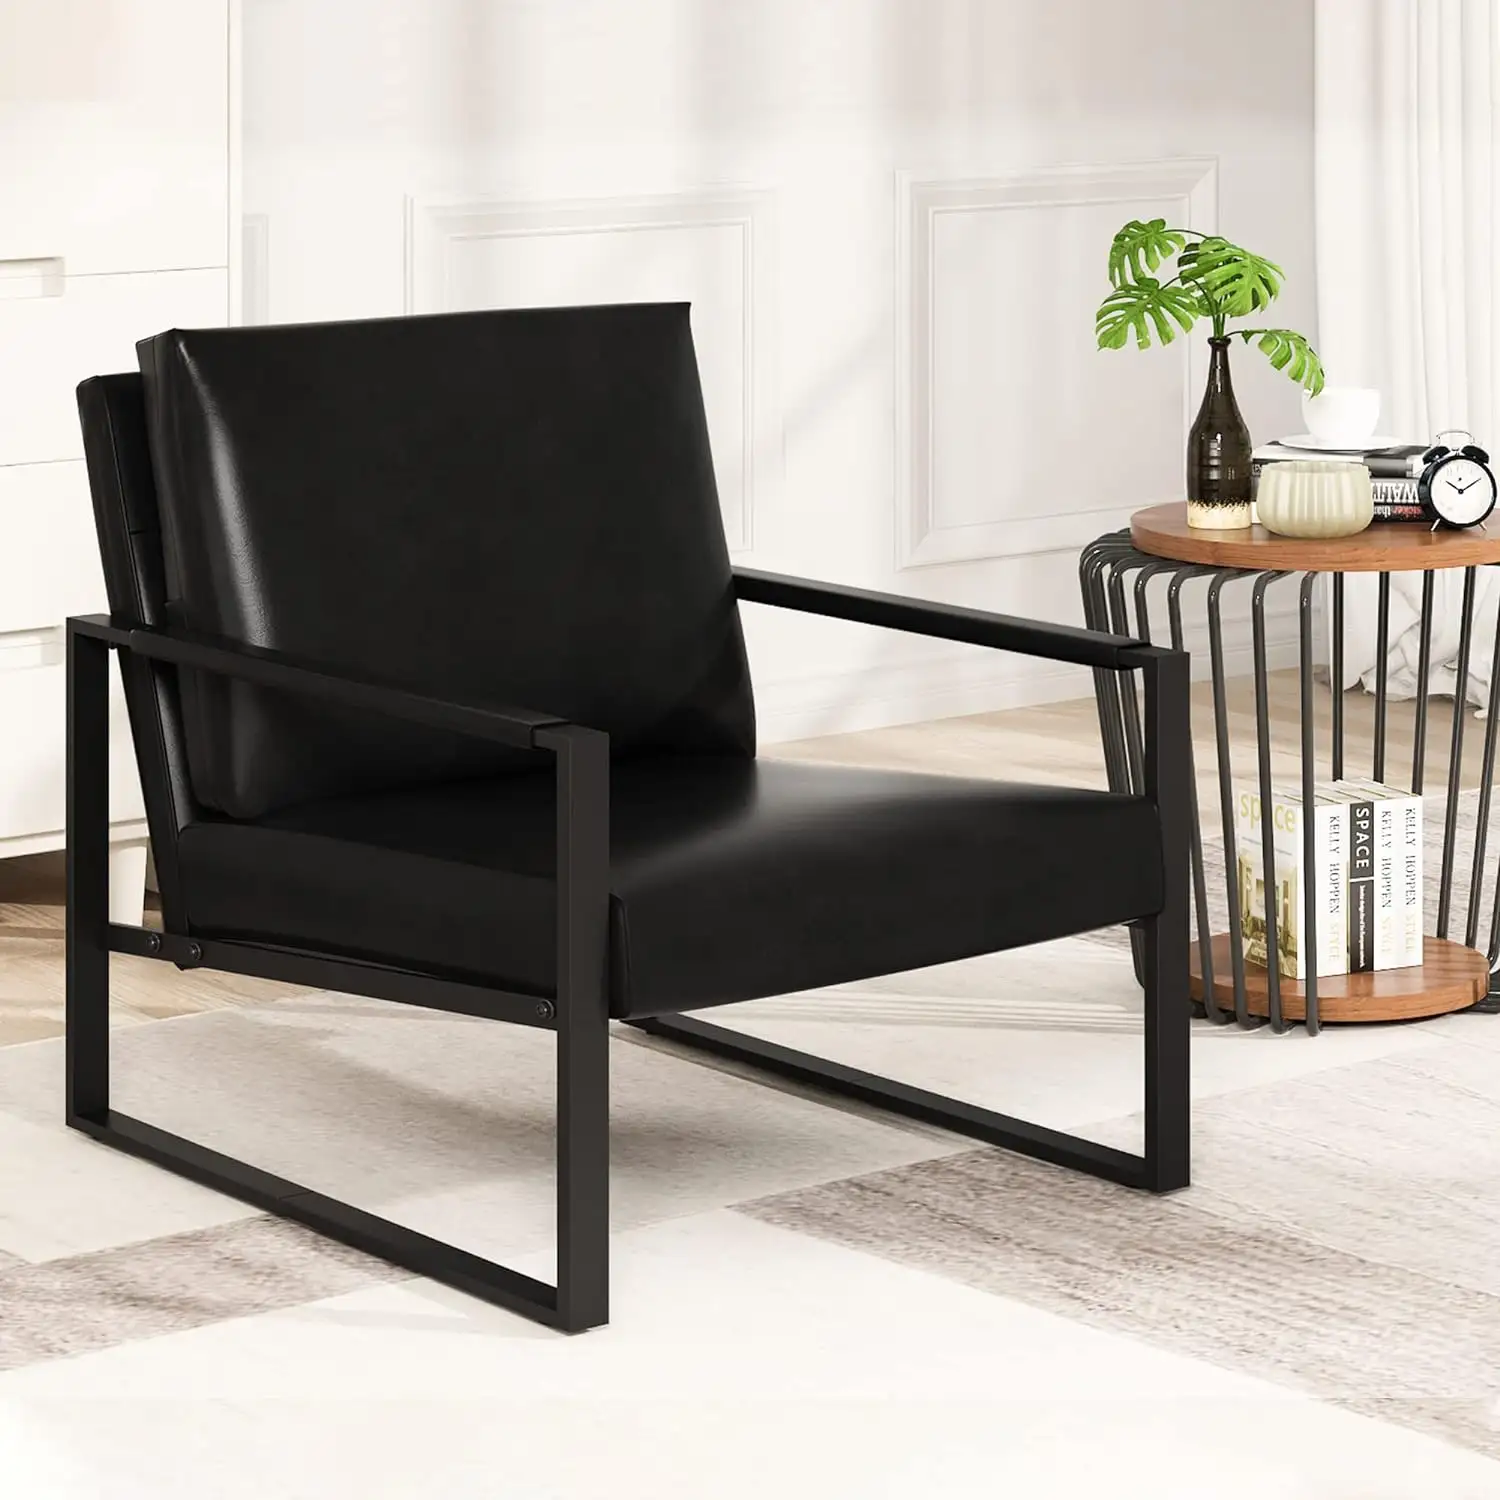 Kursi Sofa kulit hitam Modern kursi empuk ekstra tebal dan sandaran kaki penyerapan antiselip Ideal untuk ruang tamu